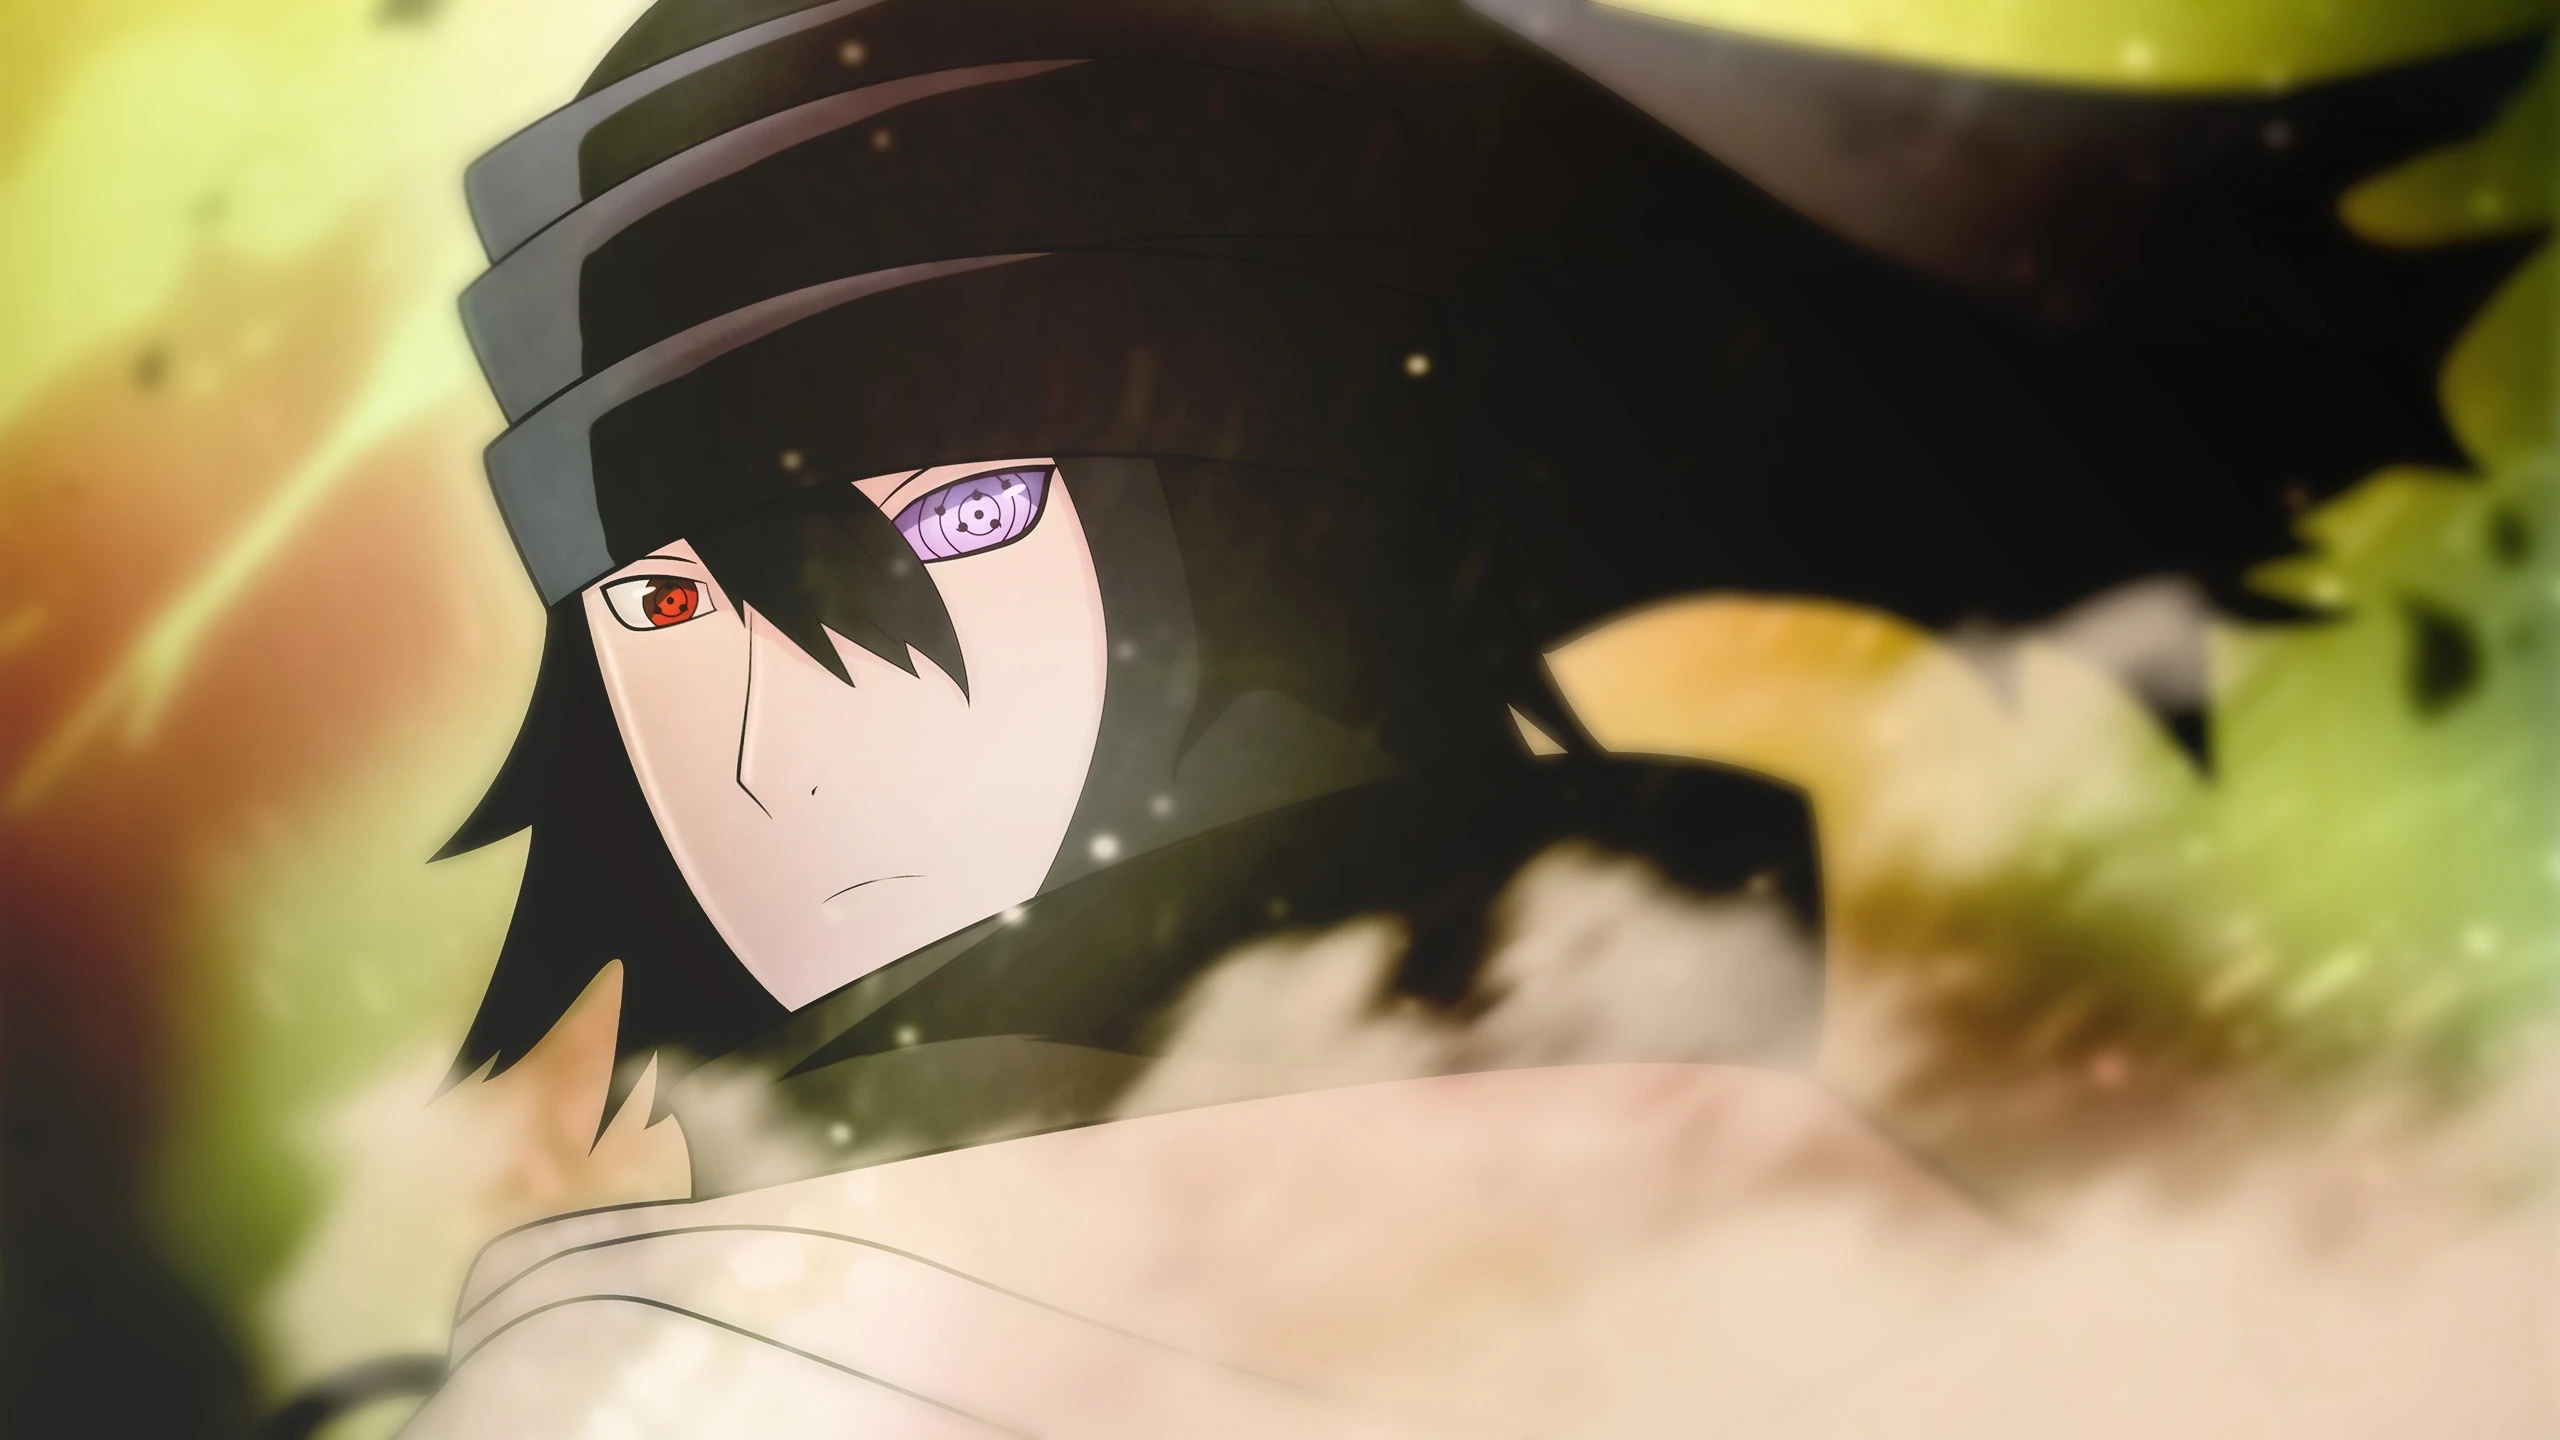 Chung yên Sasuke: Bạn có thể đã biết đến Sasuke là một nhân vật thô bạo và hống hách. Nhưng hãy thưởng thức hình ảnh này về Sasuke đầy chững chạc và sự tinh tế. Nhân vật này đang thể hiện sự điềm tĩnh và sự kiên nhẫn tuyệt vời của mình.